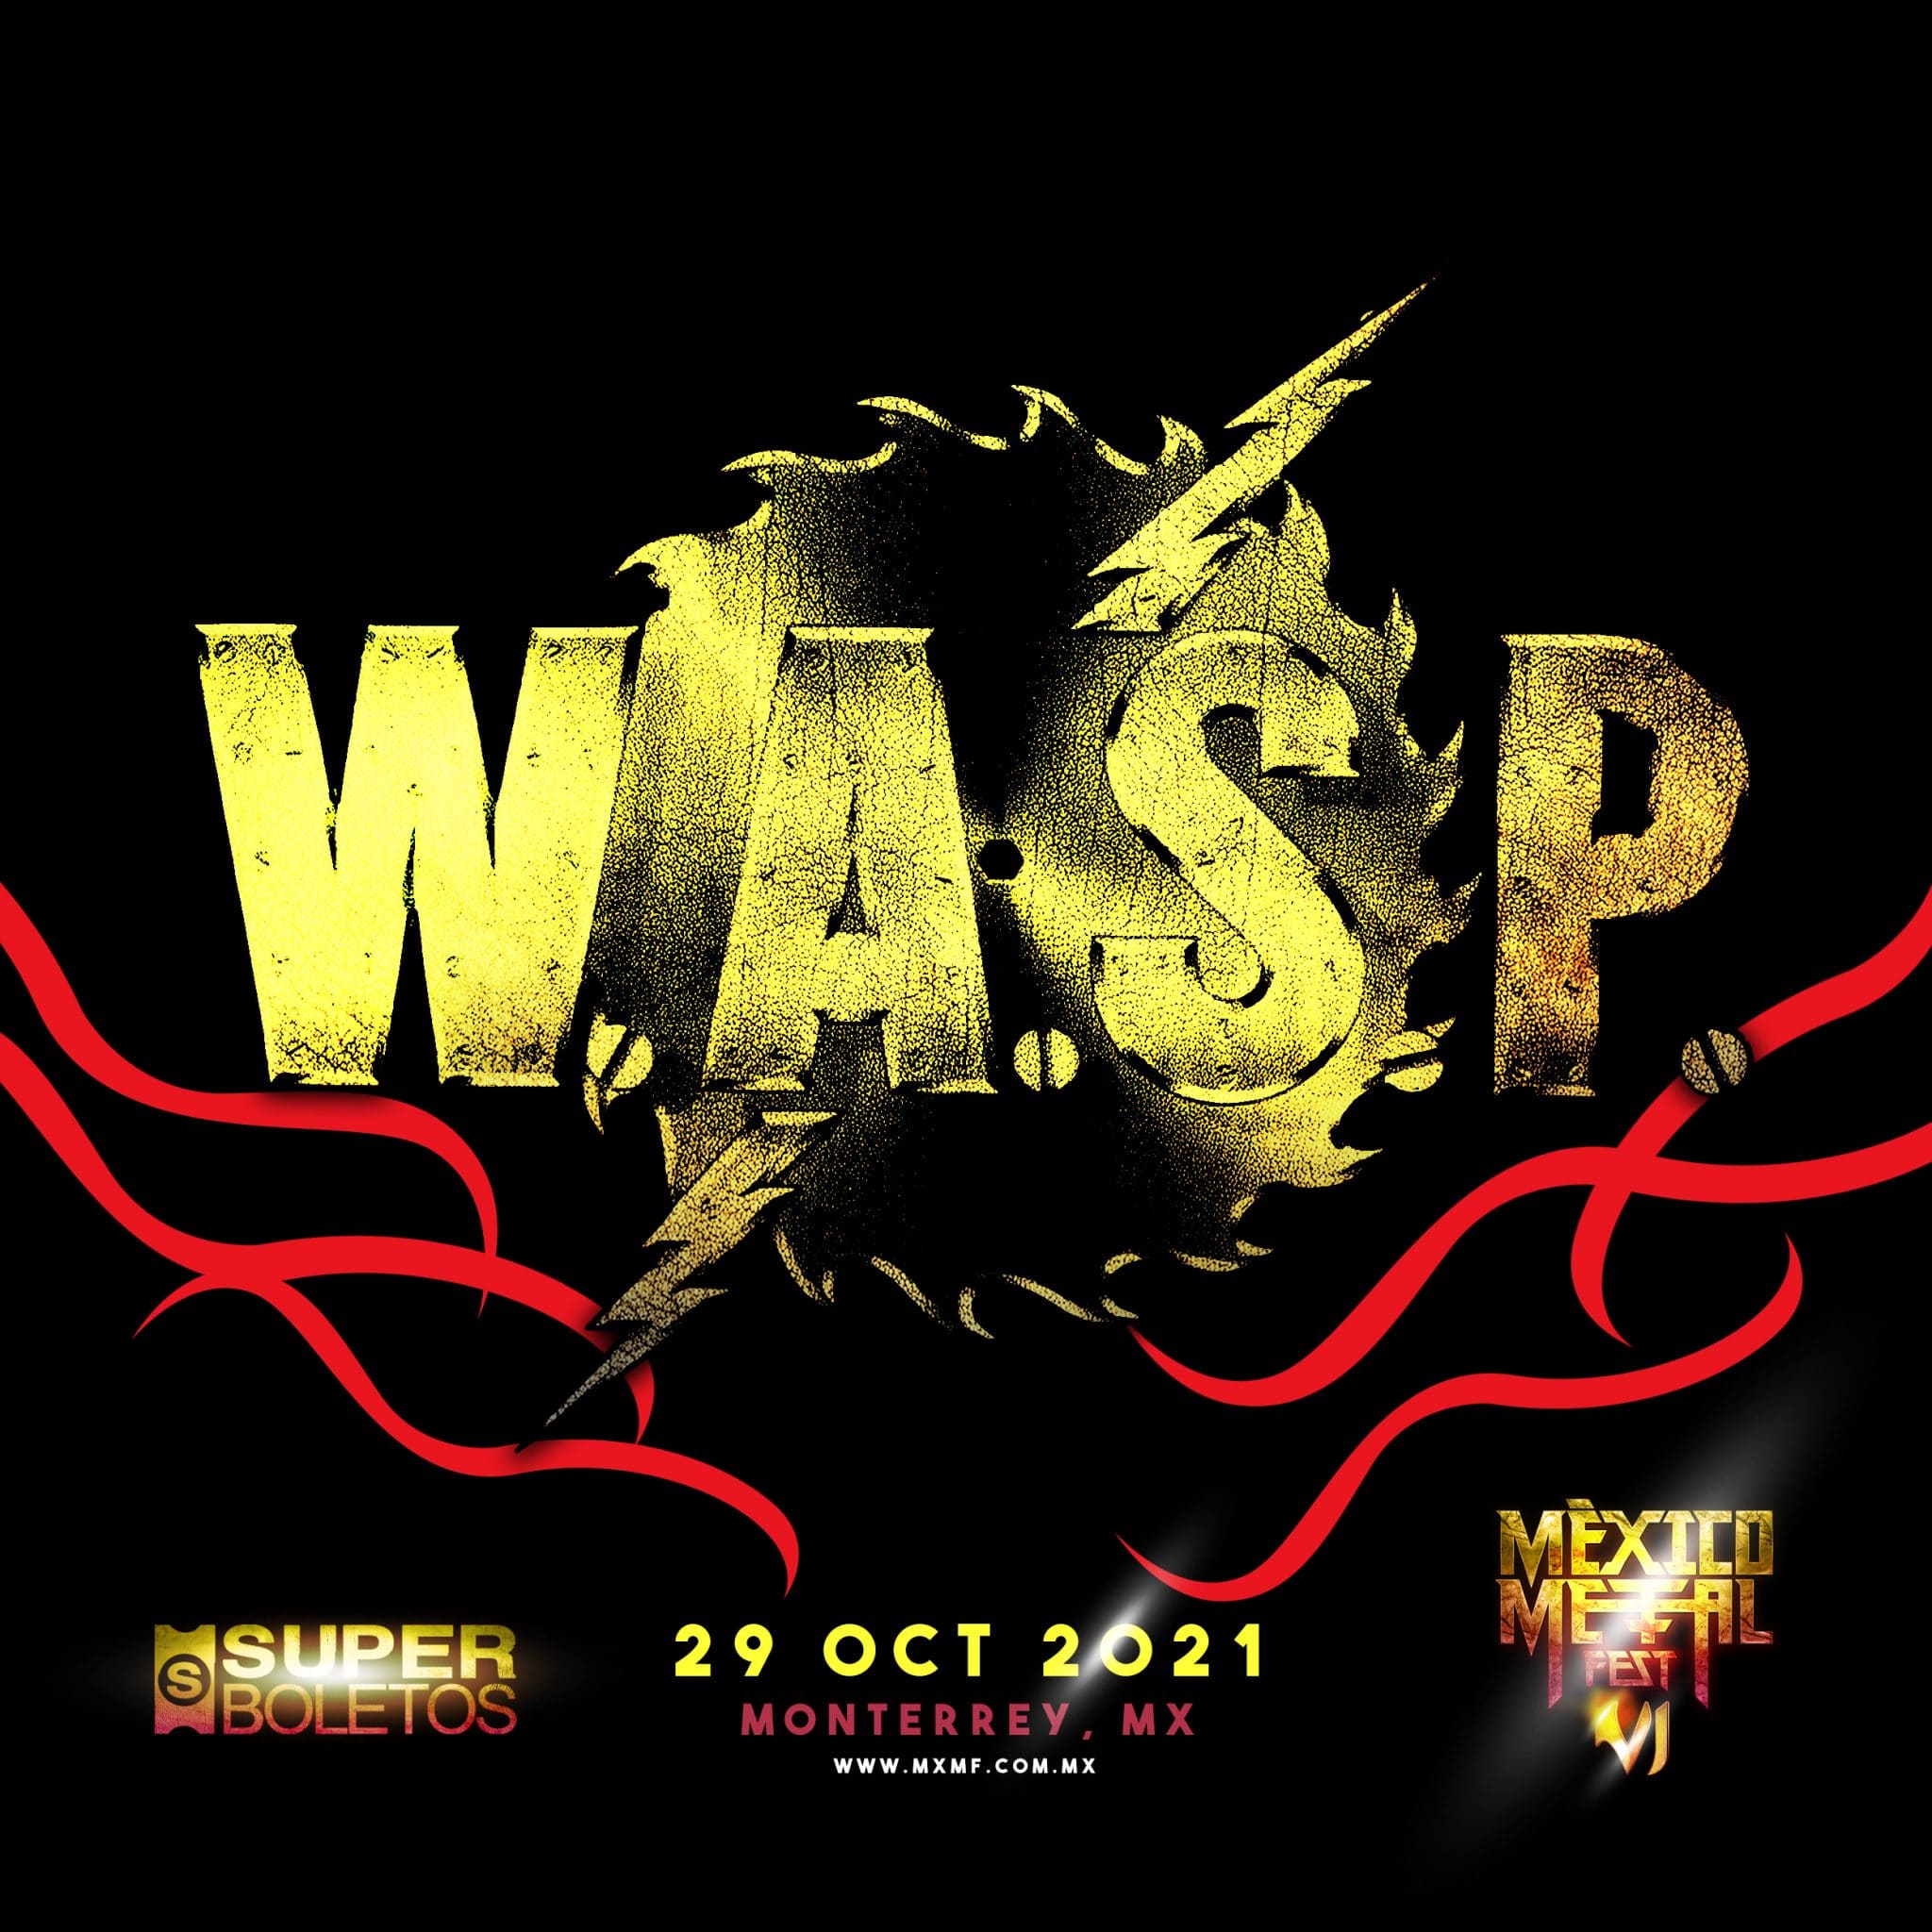 W.A.S.P. México Metal Fest